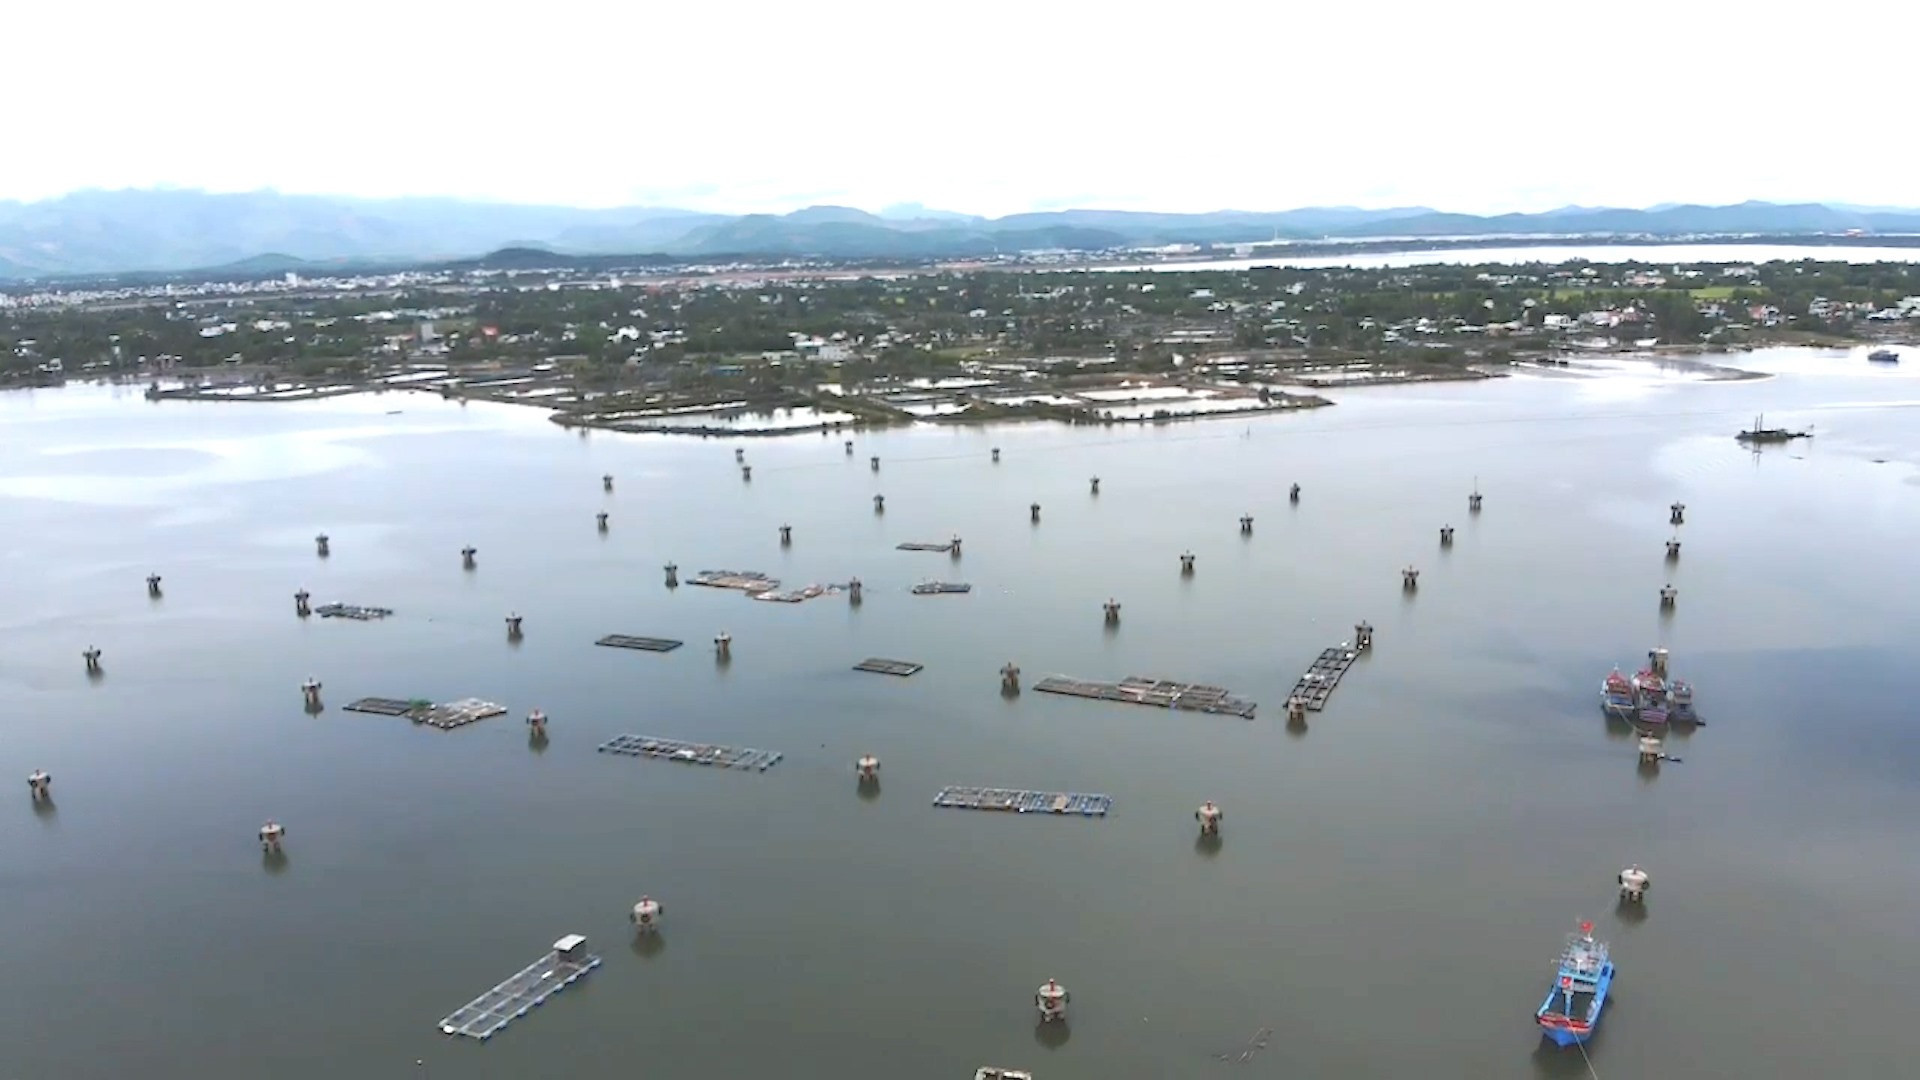 Khoảng 30 lồng bè nuôi thủy sản trái phép trên mặt nước của khu neo đậu tàu cá An Hòa. Ảnh: Đ.H